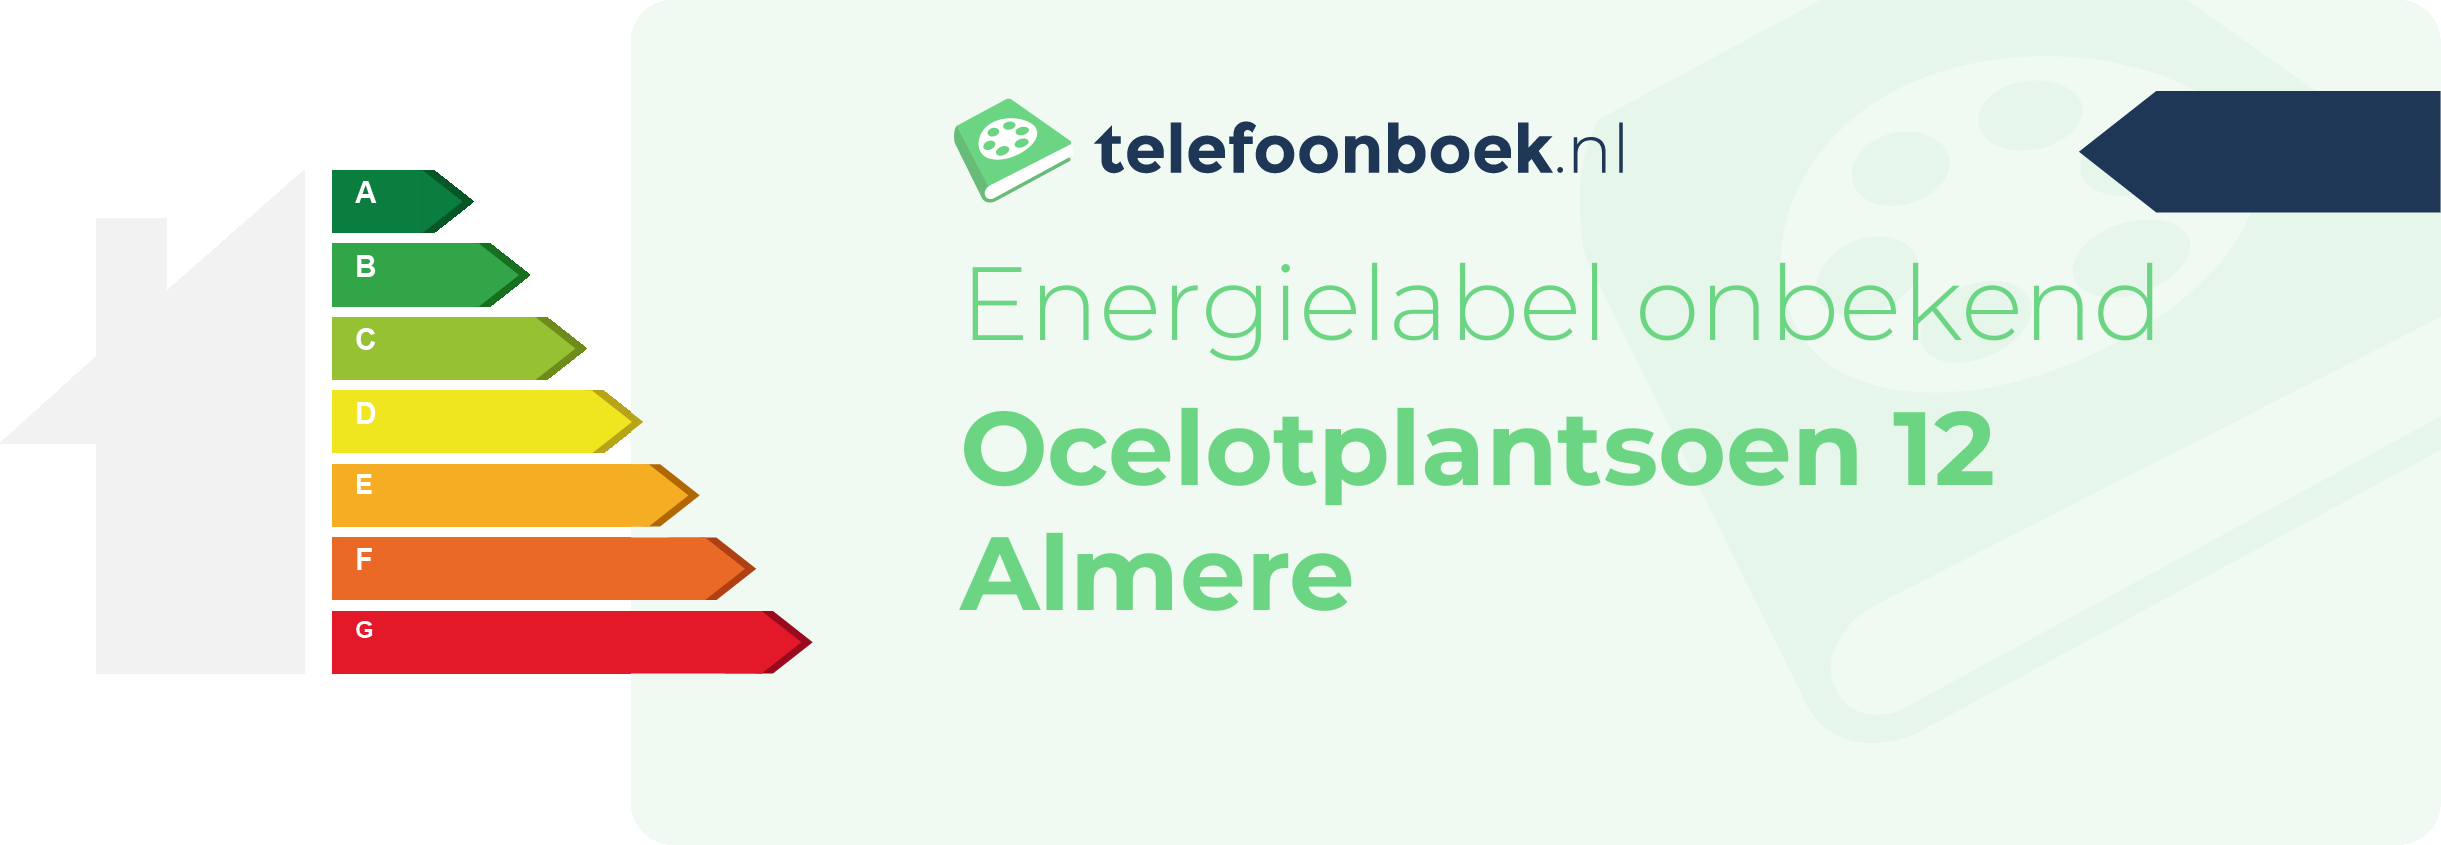 Energielabel Ocelotplantsoen 12 Almere